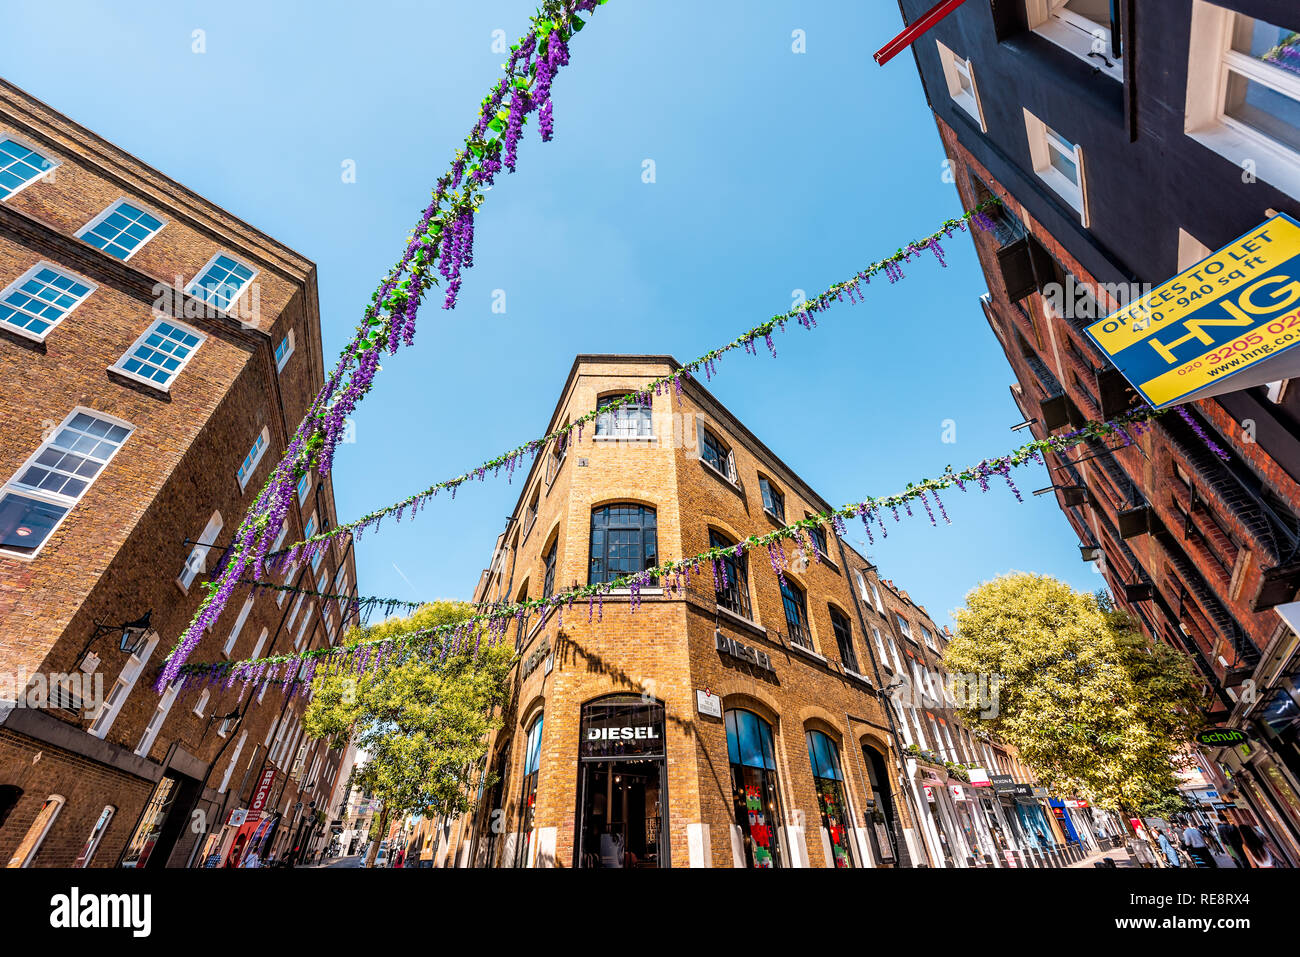 Londres, Royaume-Uni - 26 juin 2018 : Architecture de Covent garden Neal's Yard Street célèbre décorations fleurs en été avec des bâtiments en brique et le commerce de détail Banque D'Images